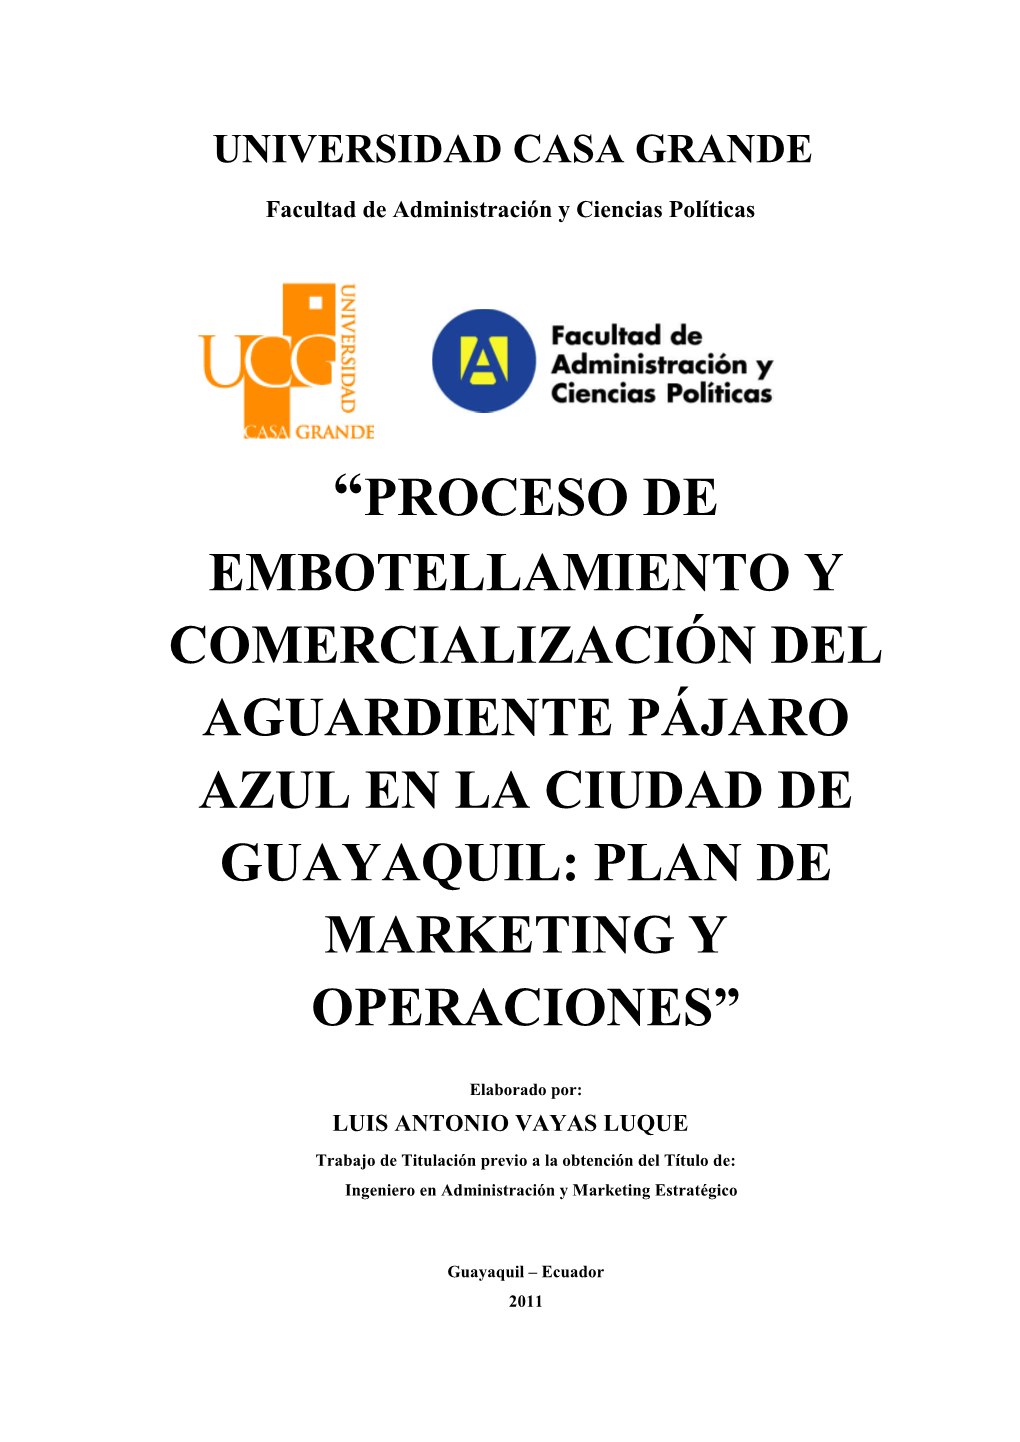 Proceso De Embotellamiento Y Comercialización Del Aguardiente Pájaro Azul En La Ciudad De Guayaquil: Plan De Marketing Y Operaciones”